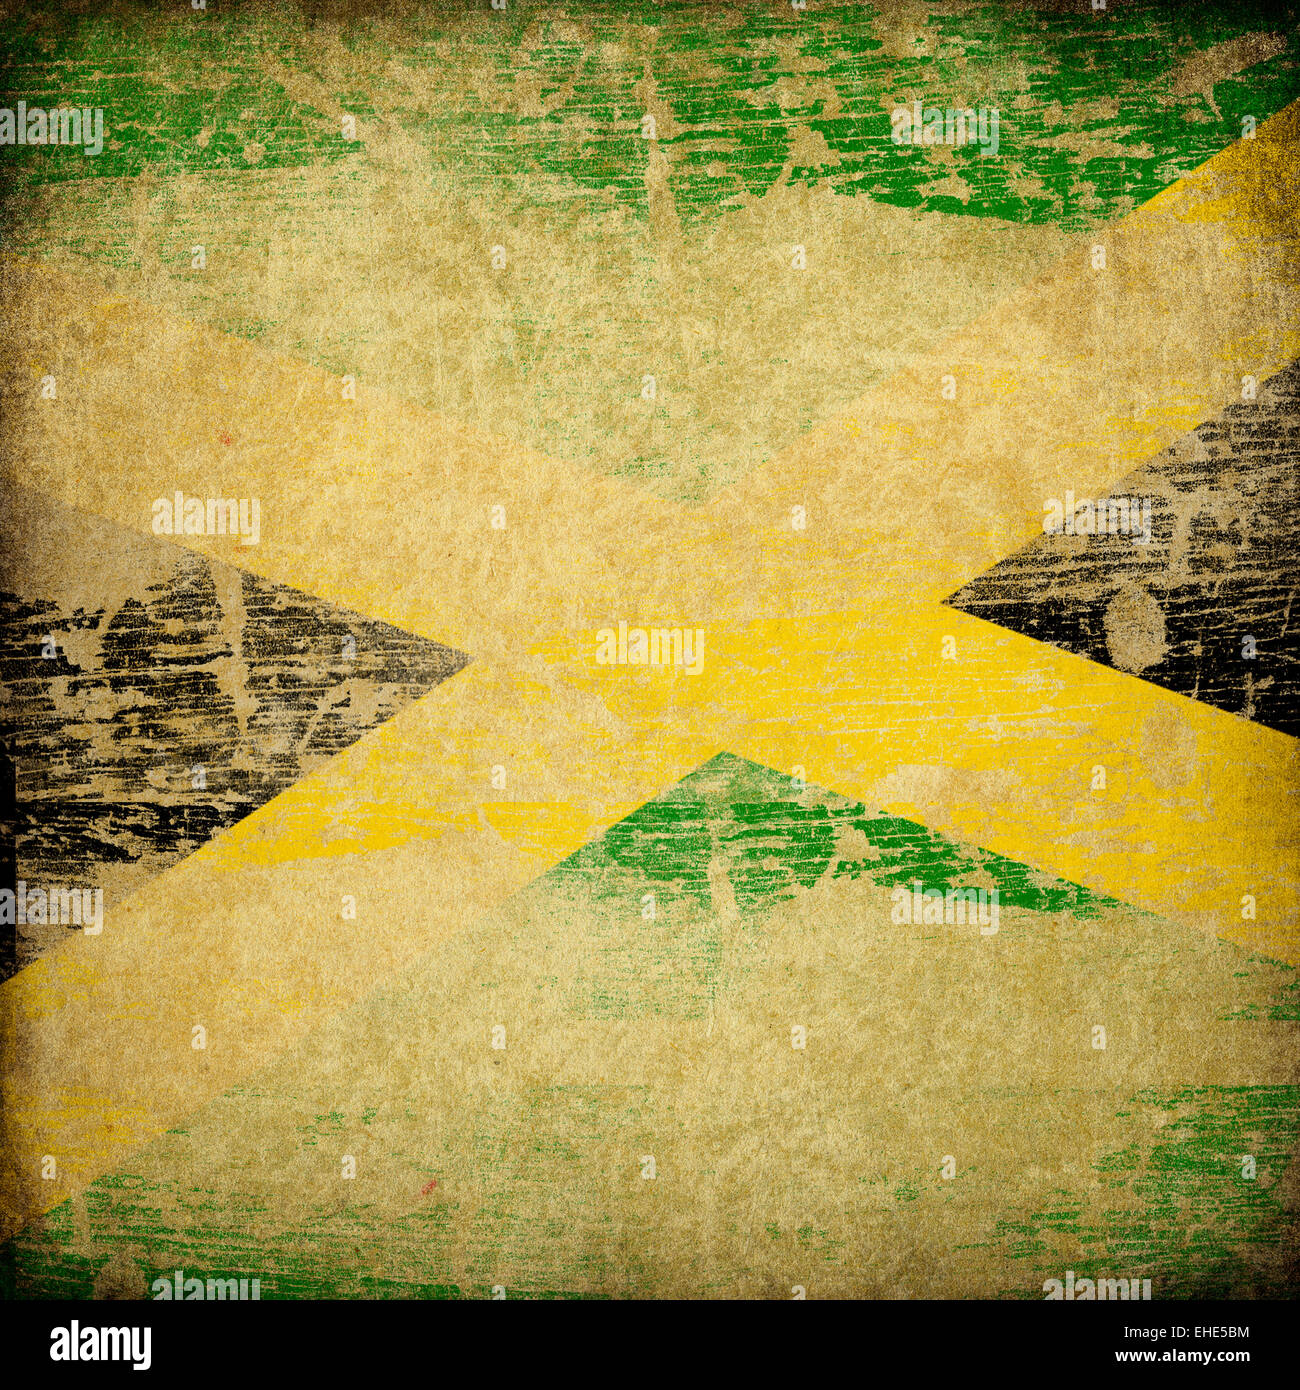 Jamaica grunge flag background. Stock Photo